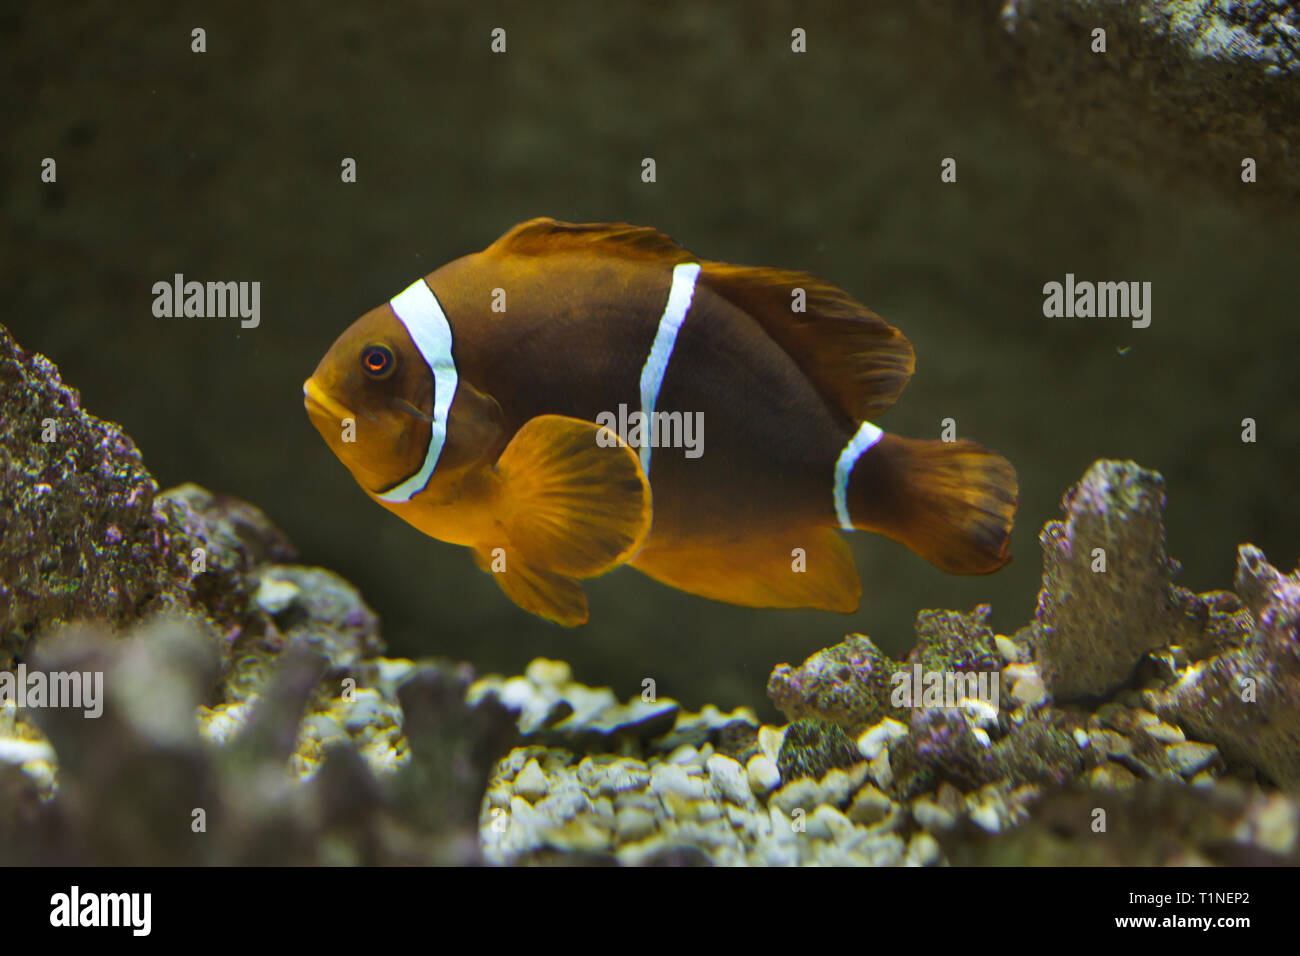 Spine-cheeked anemonefish (Premnas biaculeatus), también conocido como el granate pez payaso. Foto de stock